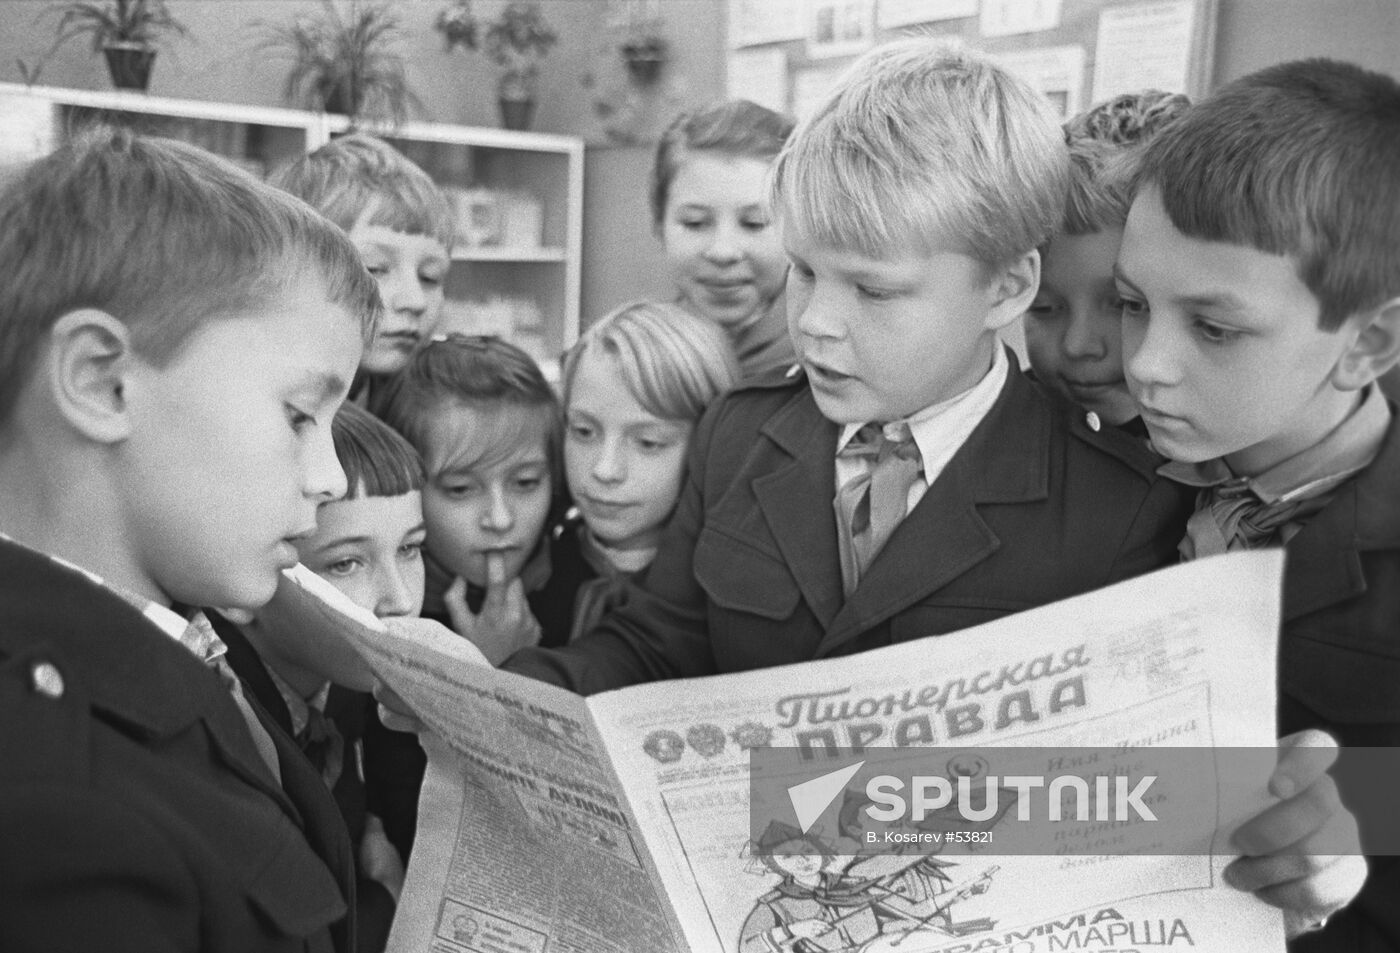 SCHOOLCHILDREN NEWSPAPER PIONERSKAYA PRAVDA